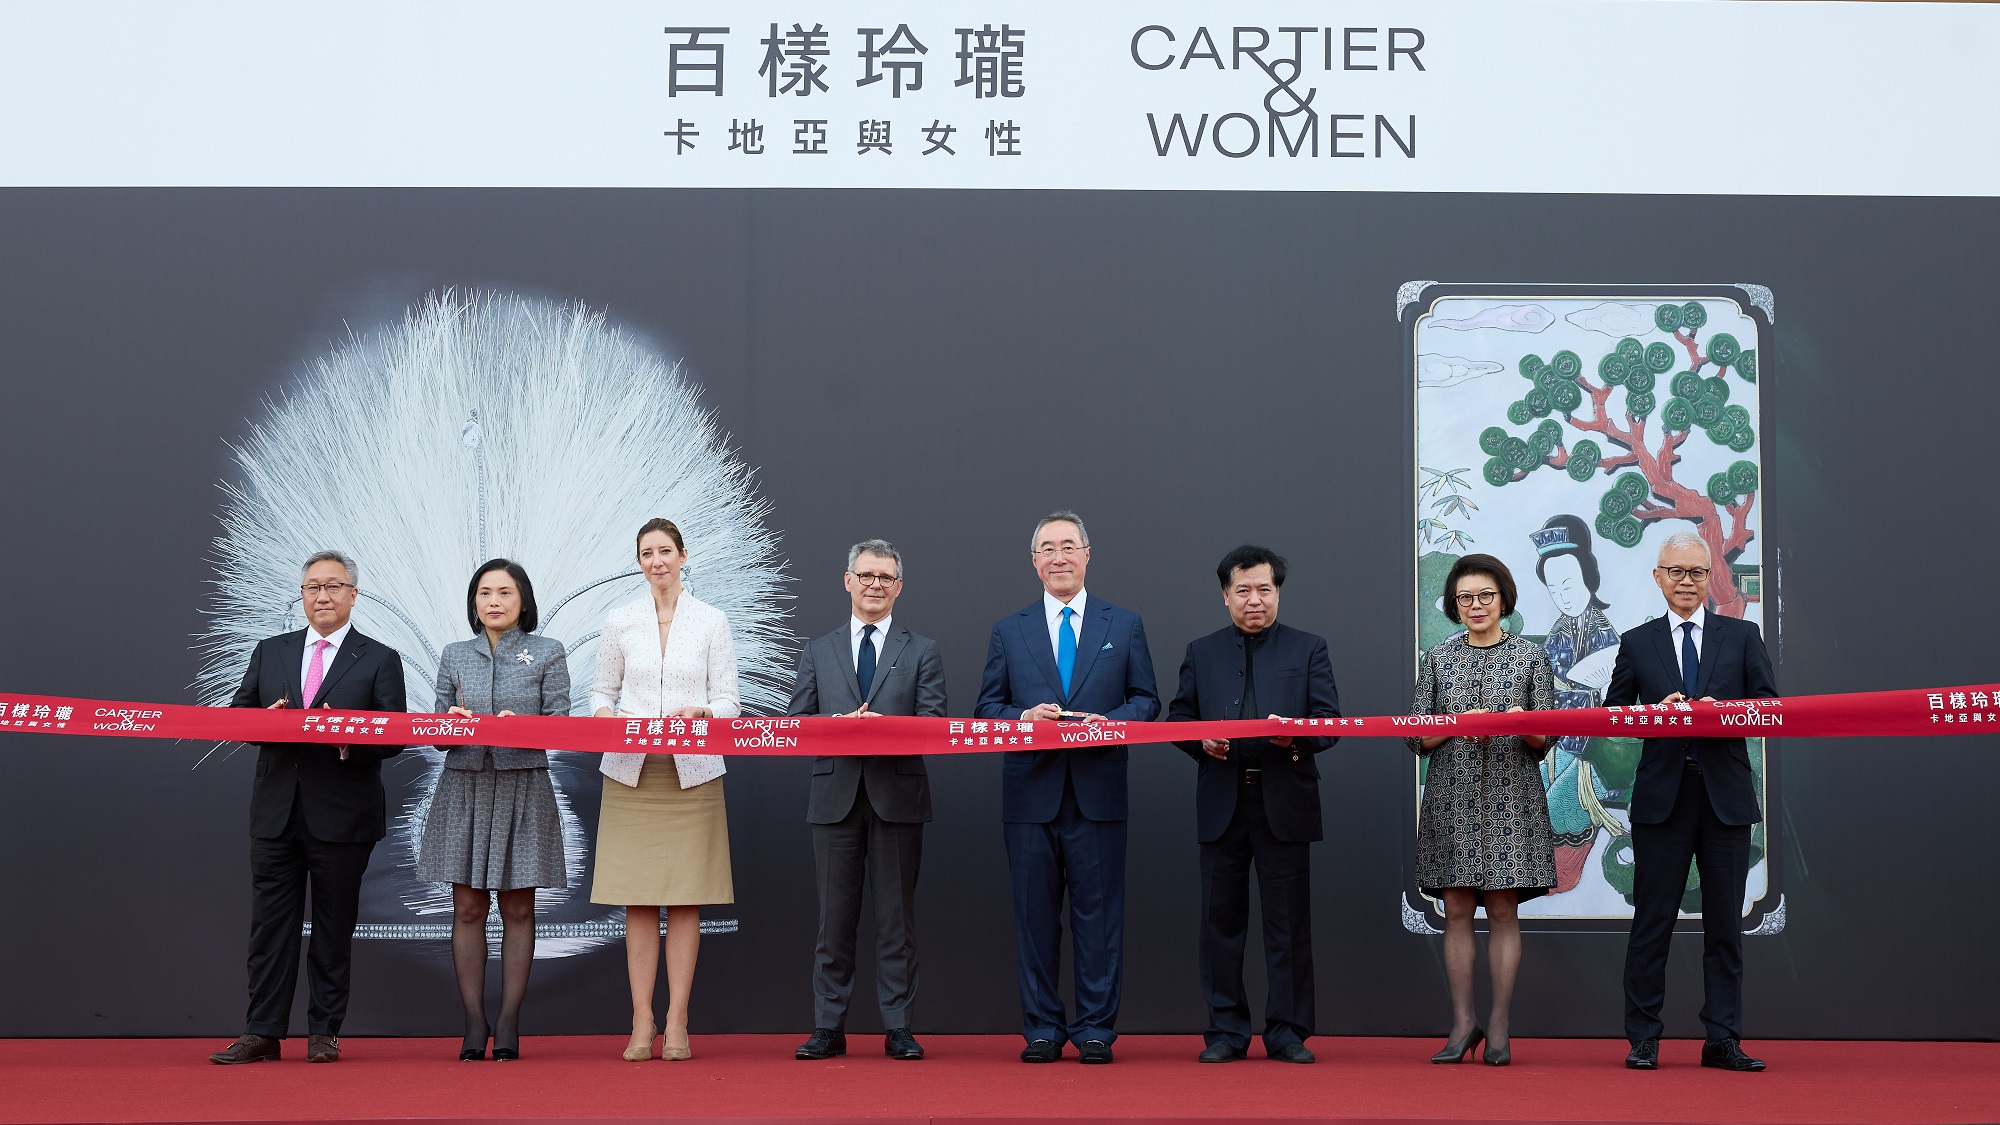 香港故宮文化博物館特別展覽—— 「百樣玲瓏──卡地亞與女性」開幕  image